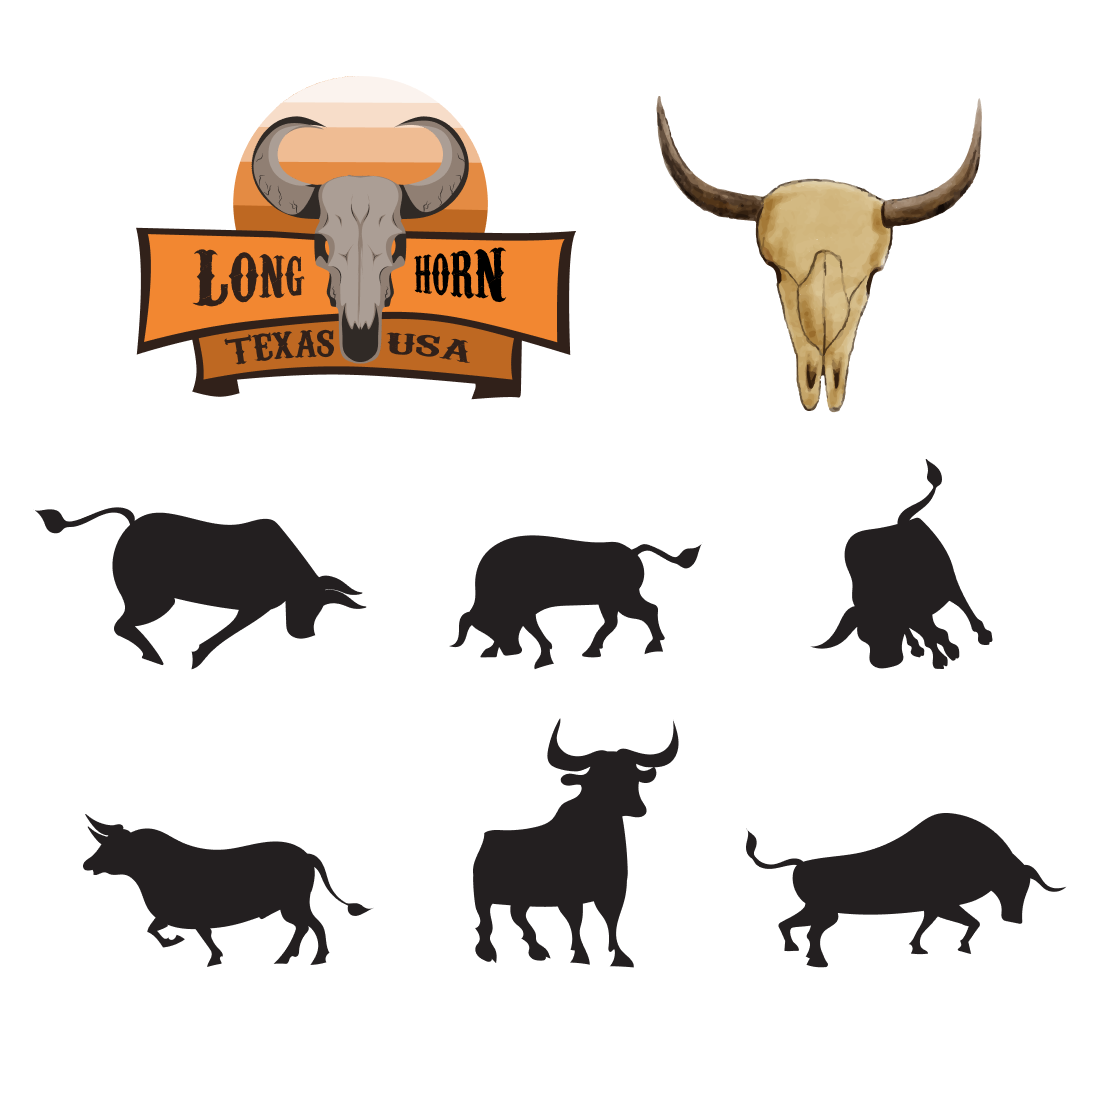 texas longhorns logo vector